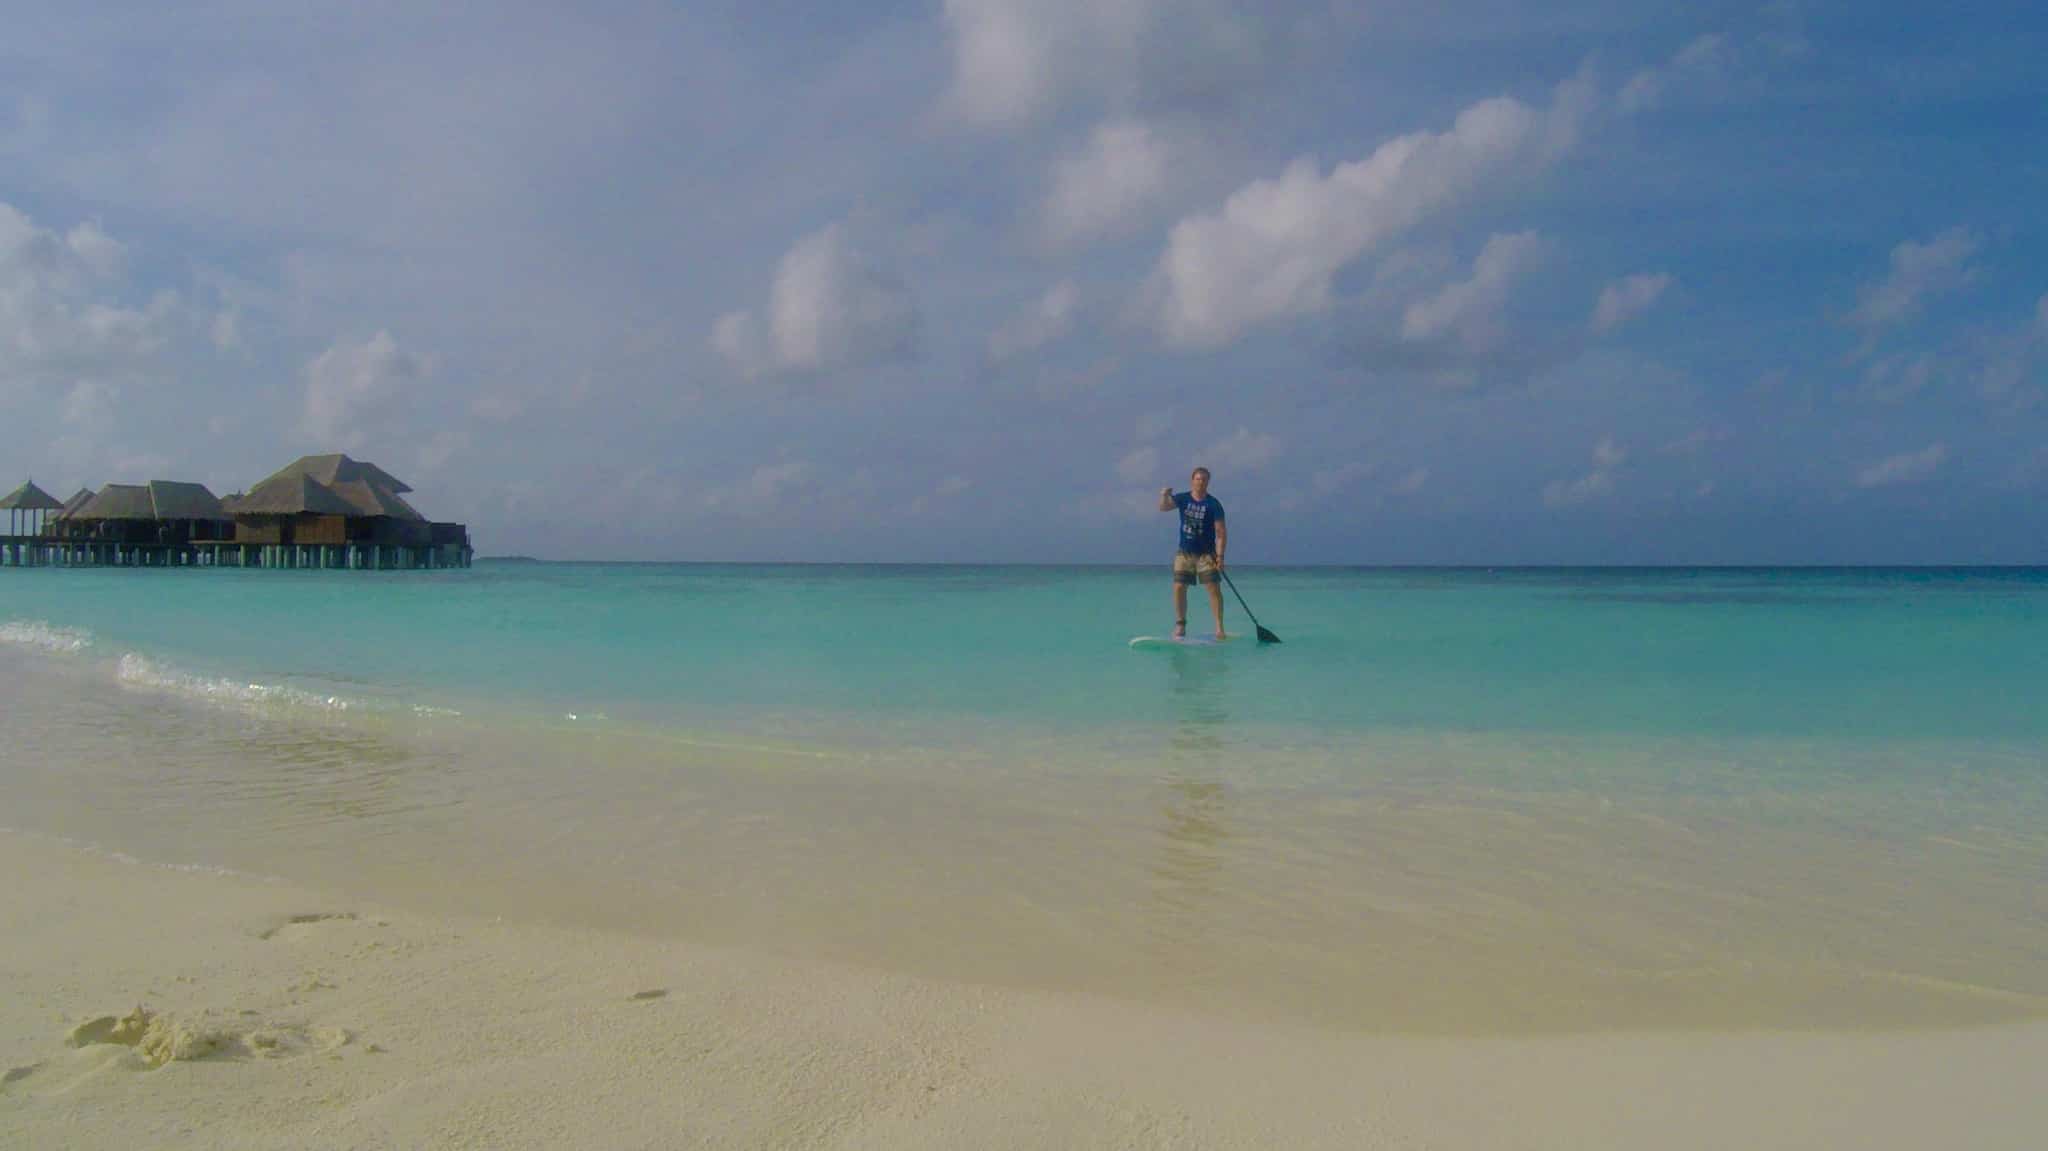 Ich war jeden Tag auf Bodu Hithi mit dem SUP unterwegs – ein ideales Workout im Urlaub. Reisebericht Coco Bodu Hithi Malediven Erfahrungen